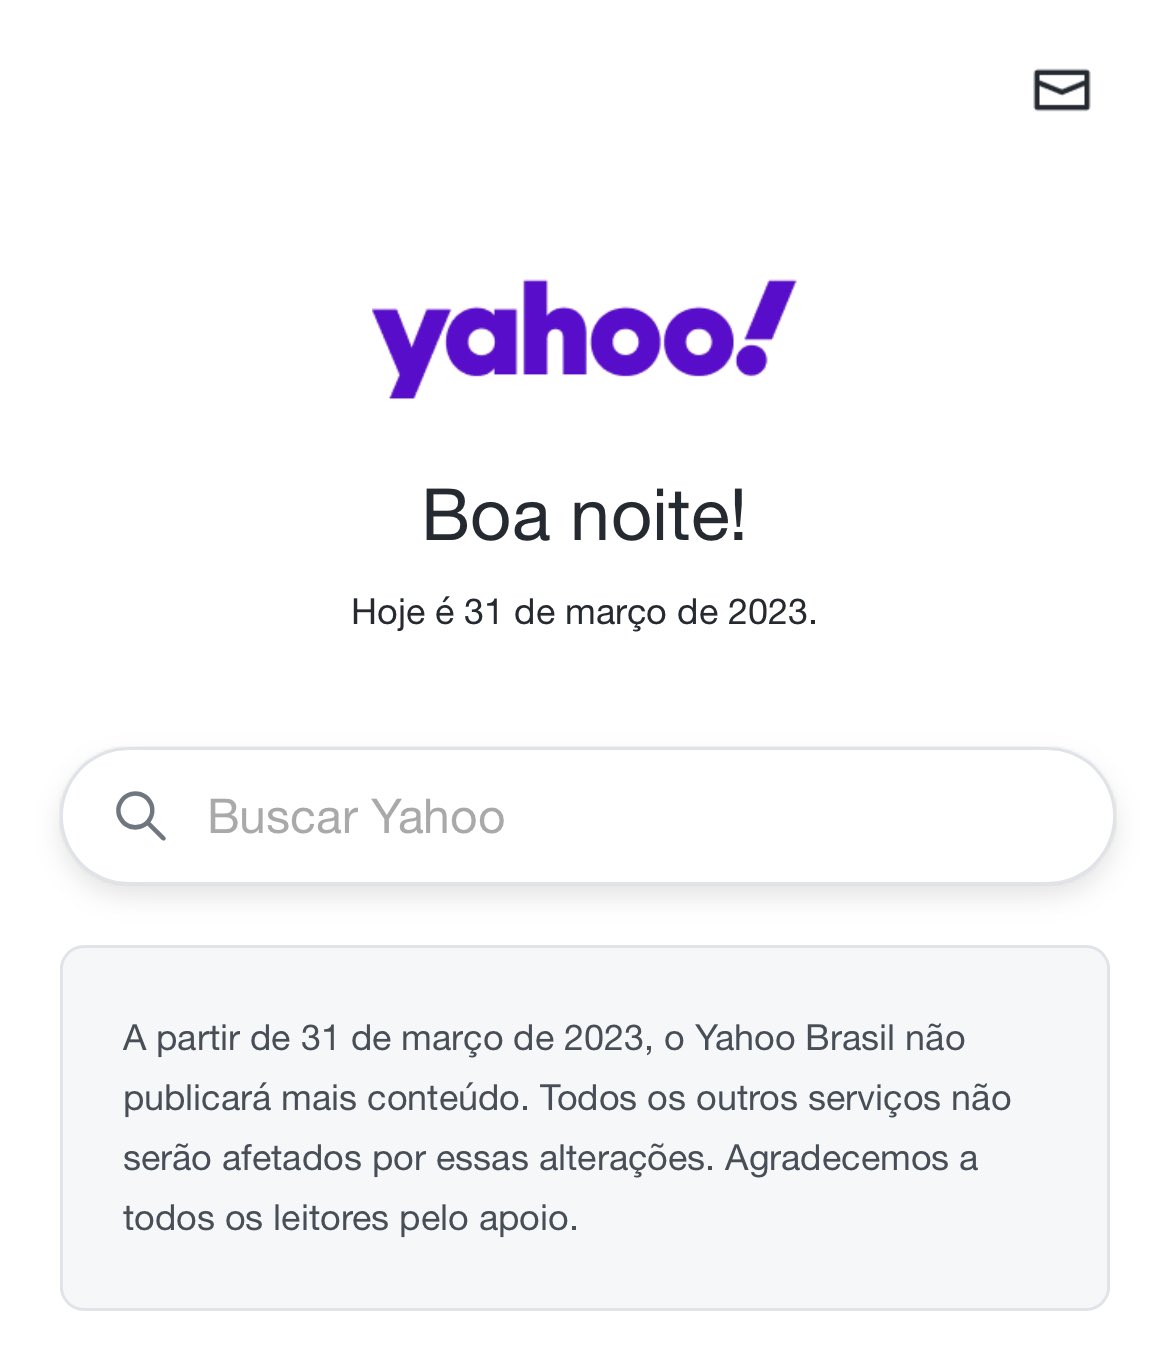 João Pedro C. Motta on X: O Yahoo! Brasil deixou de publicar conteúdos. O  site tinha 85 milhões de visitas por mês e resolveu tirar tudo do ar e  redirecionar pra home